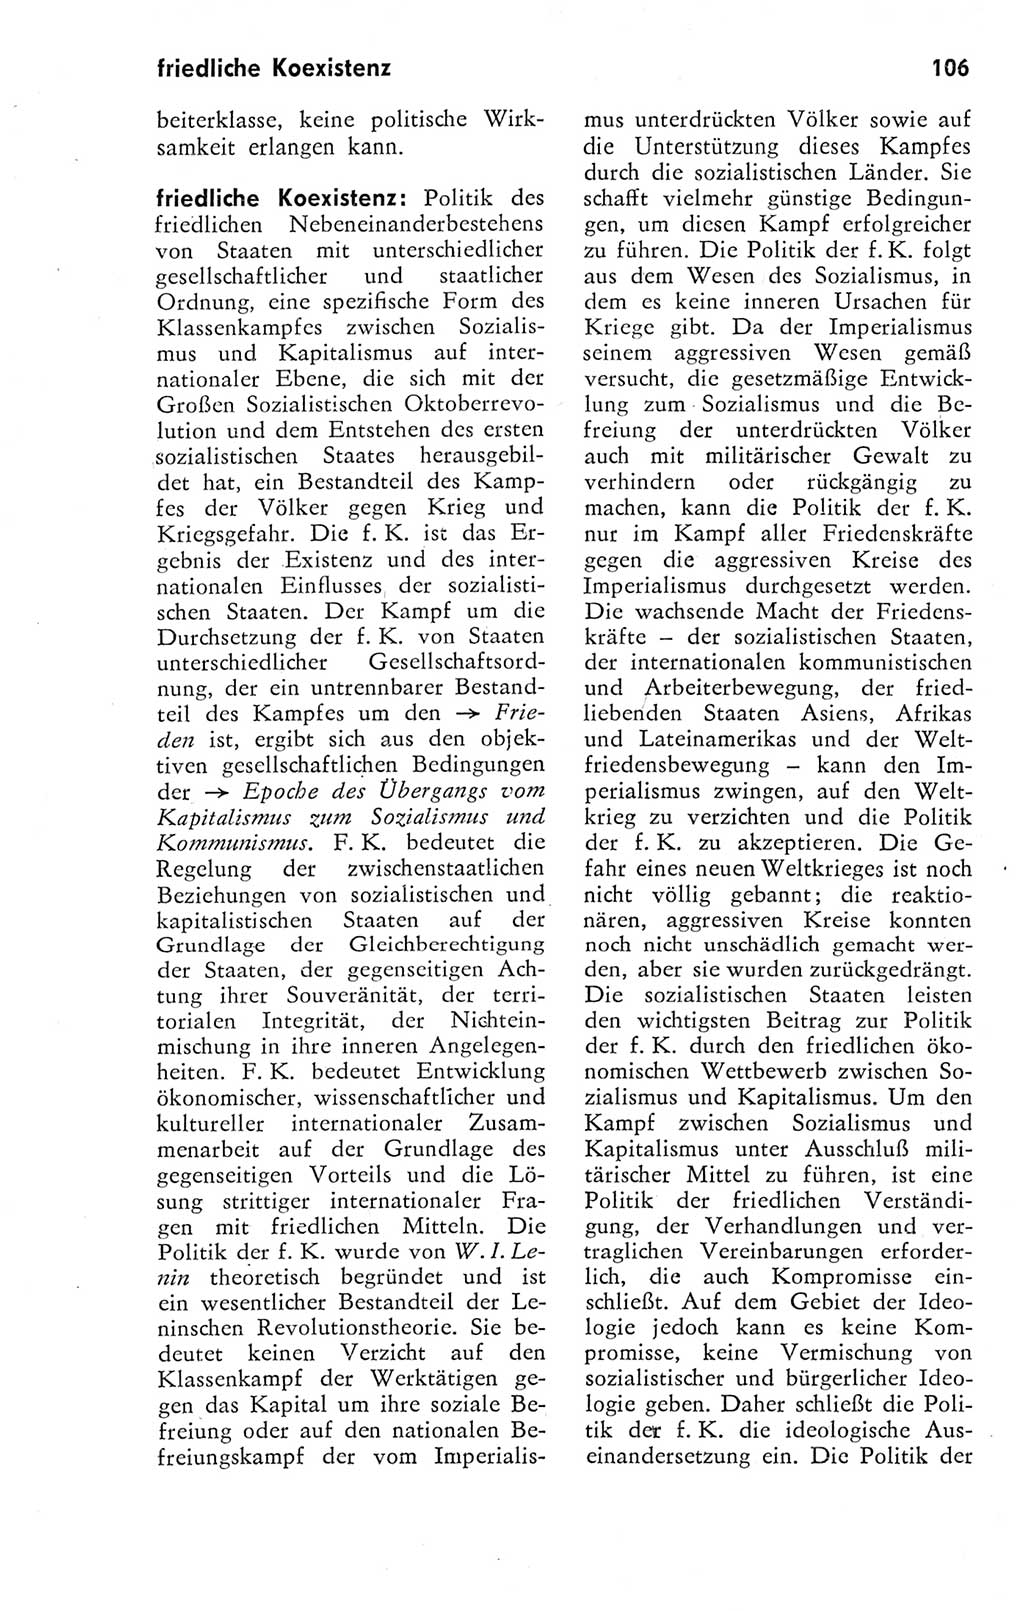 Kleines Wörterbuch der marxistisch-leninistischen Philosophie [Deutsche Demokratische Republik (DDR)] 1974, Seite 106 (Kl. Wb. ML Phil. DDR 1974, S. 106)